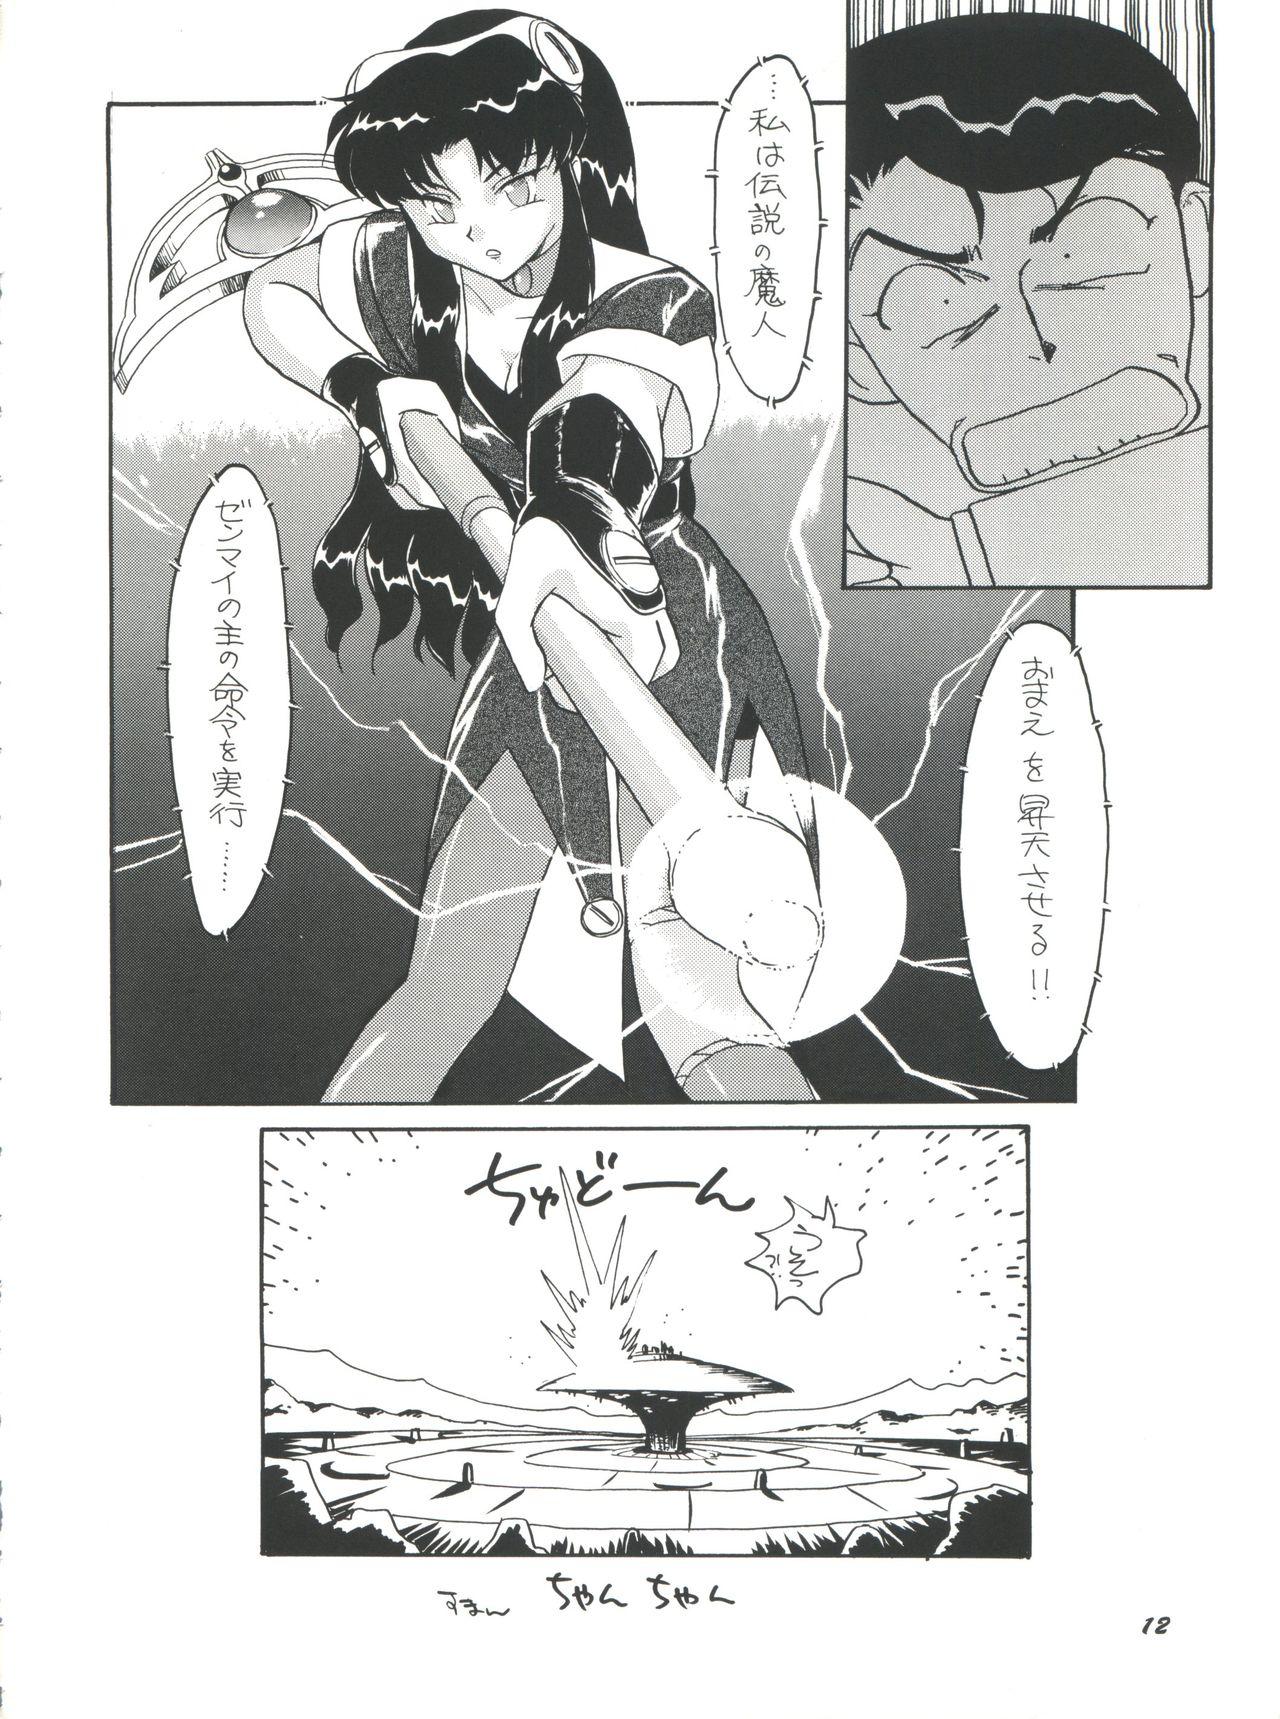 Ftv Girls PLUS-Y Vol. 18 - El hazard The vision of escaflowne Gundam x Blackcock - Page 12